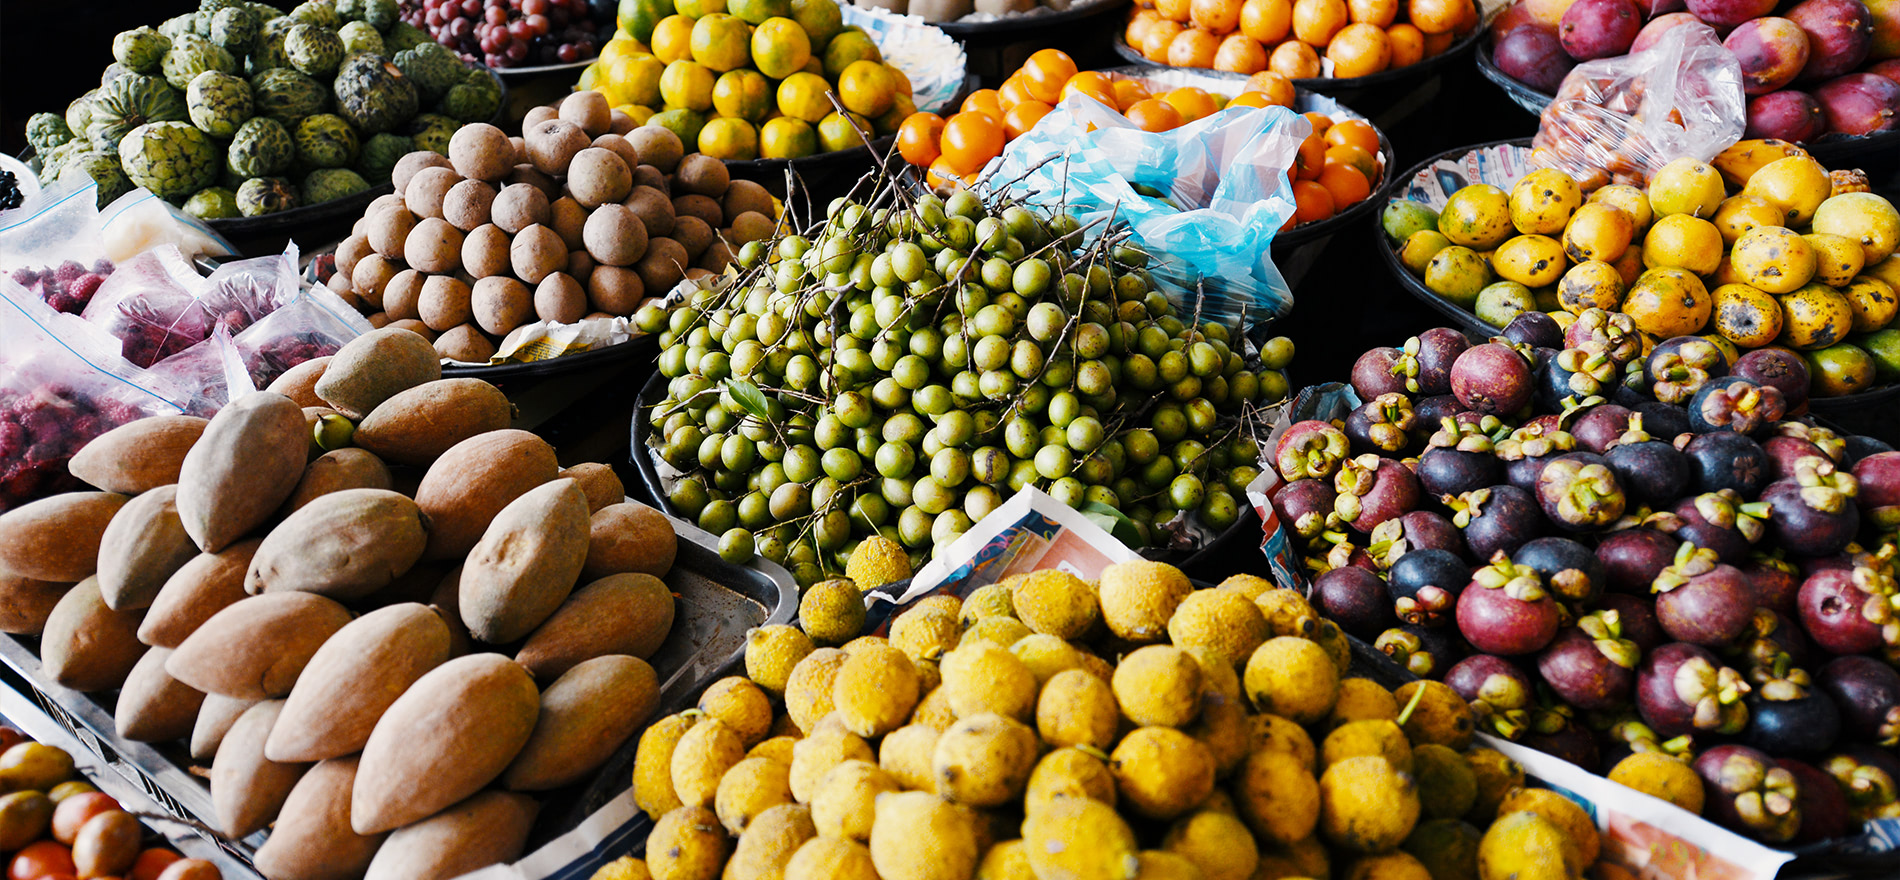 frutas y vegetales en plaza de mercado alimentos afrodisiacos de colombia.